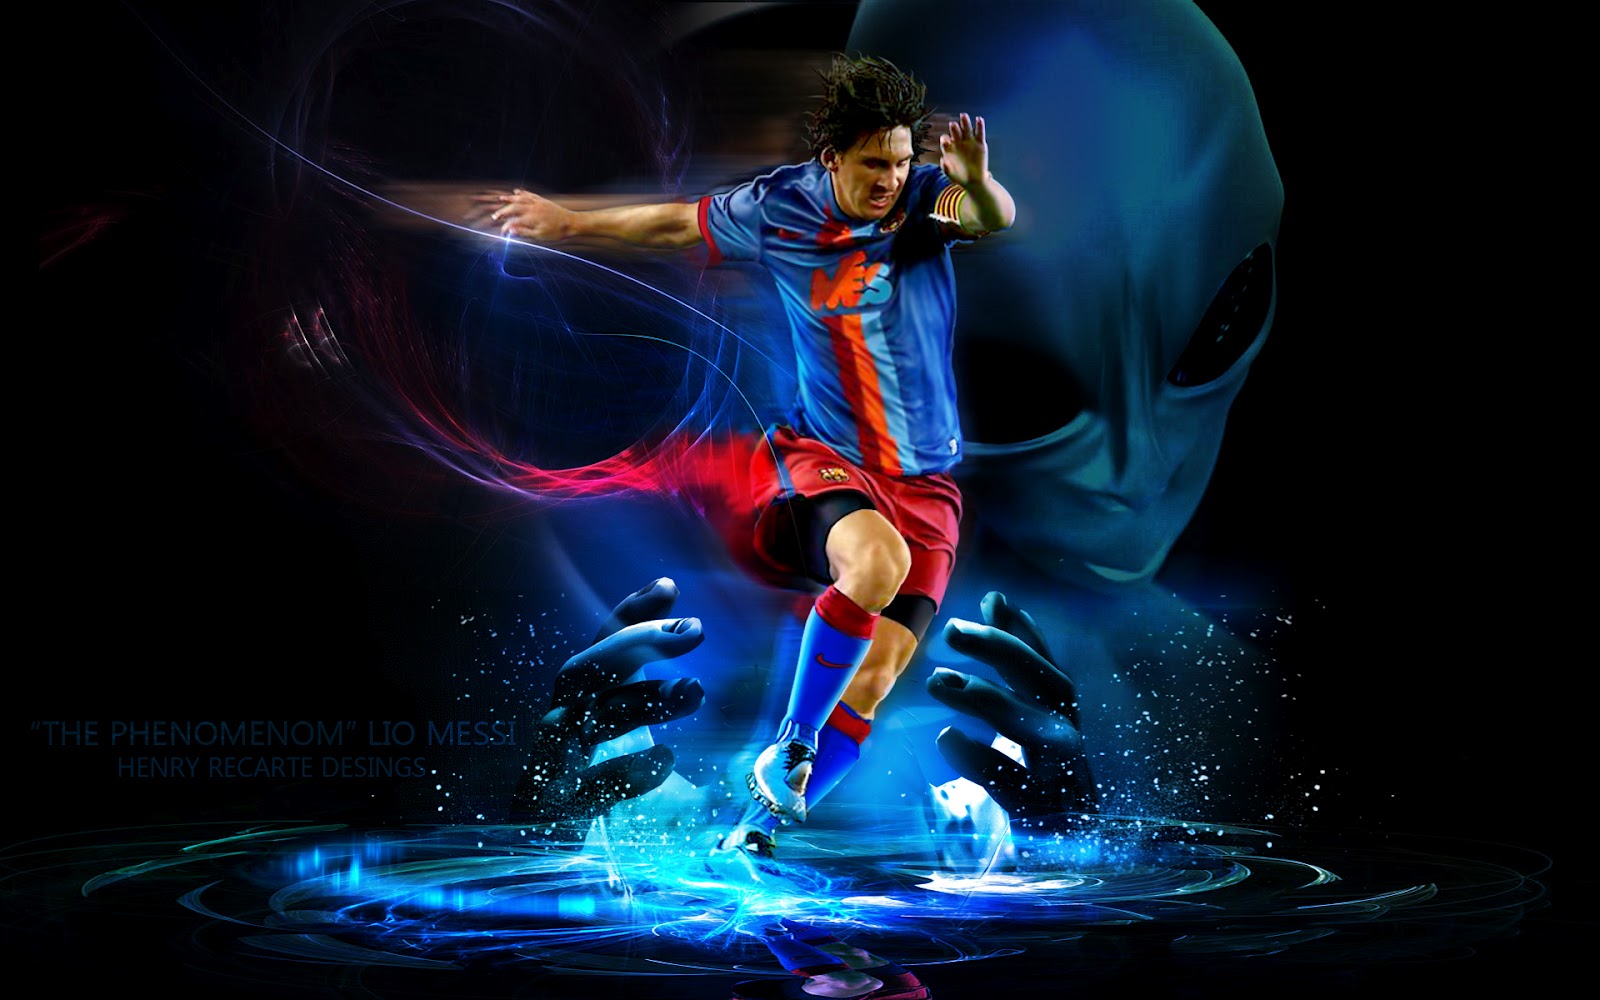 Hình nền Lionel Messi 3D sẽ tạo ra cảm giác như bạn đang ở gần ông vua bóng đá và hình ảnh 3D khá là sống động khiến Messi trở nên thực sự đẹp hơn bao giờ hết.